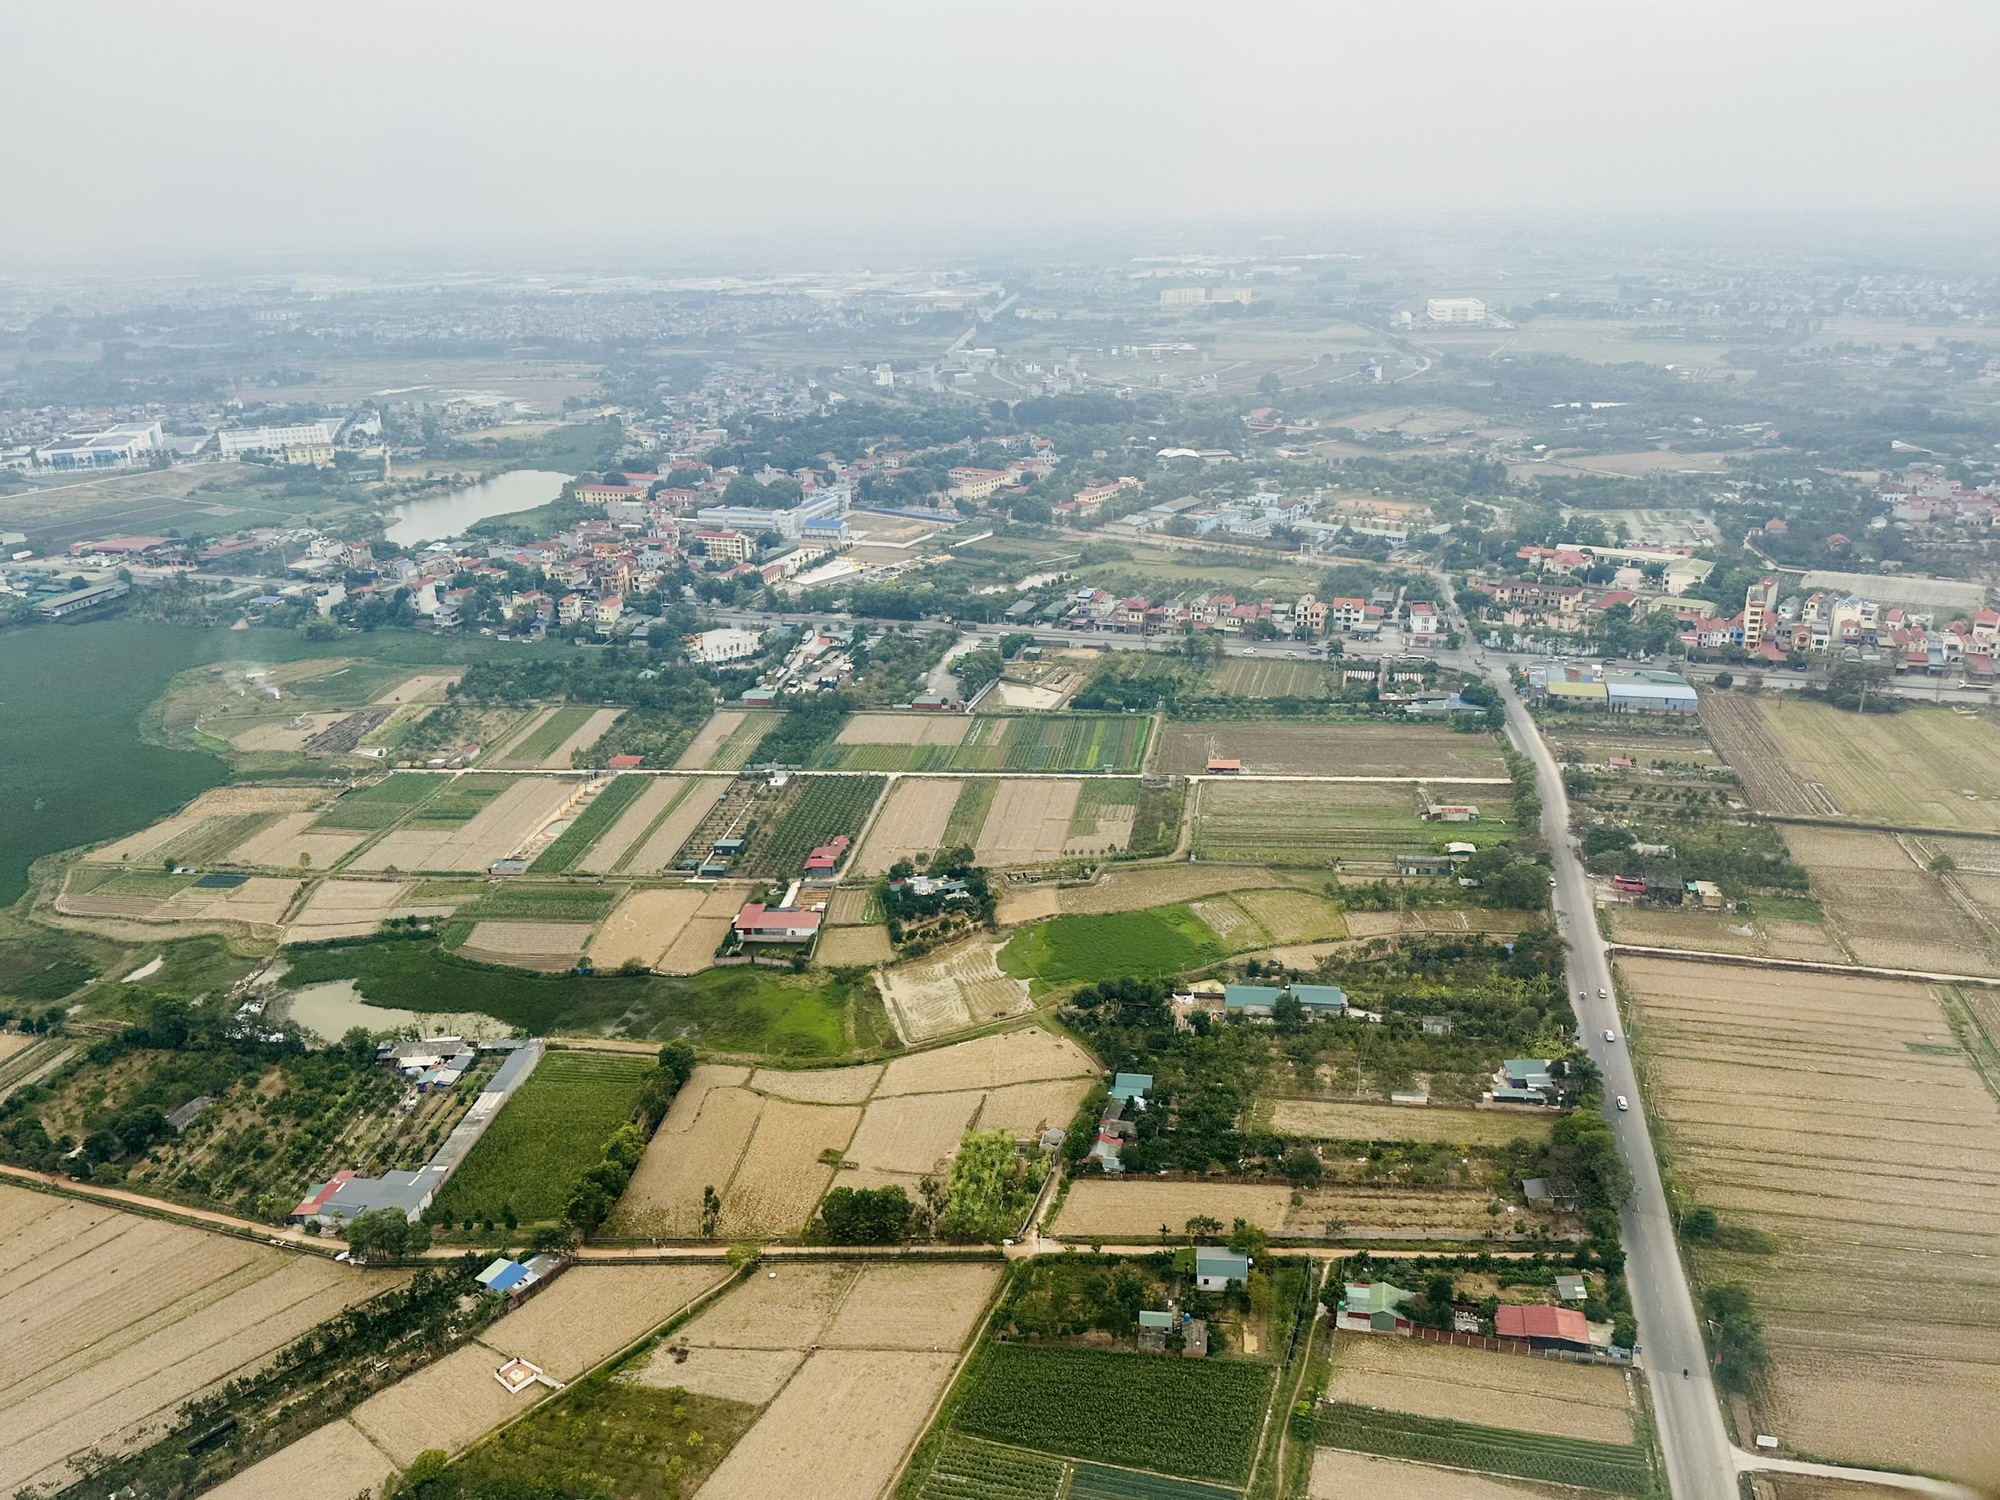 
Khi phía Tây Hà Nội đón thành phố mới, liệu bất động sản vùng ven có bứt phá?
